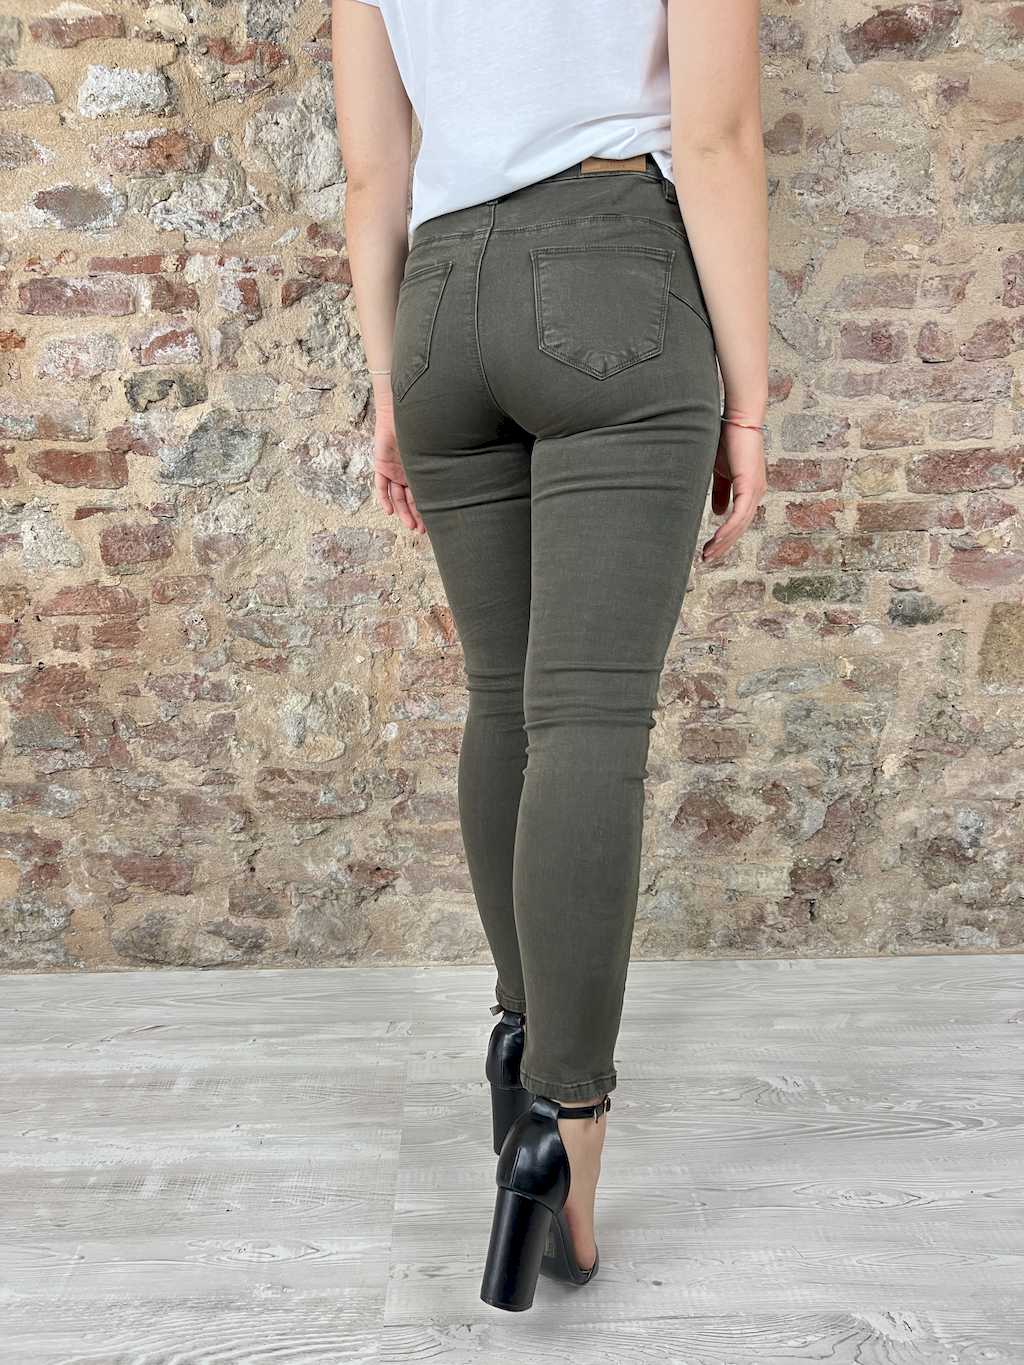 Pantalone push up elasticizzato. Modello cinque tasche. Chiusura un bottone e zip. Vestibilità piccola.  Composizione: 98% cotone, 2% elastane. Colore: verde.